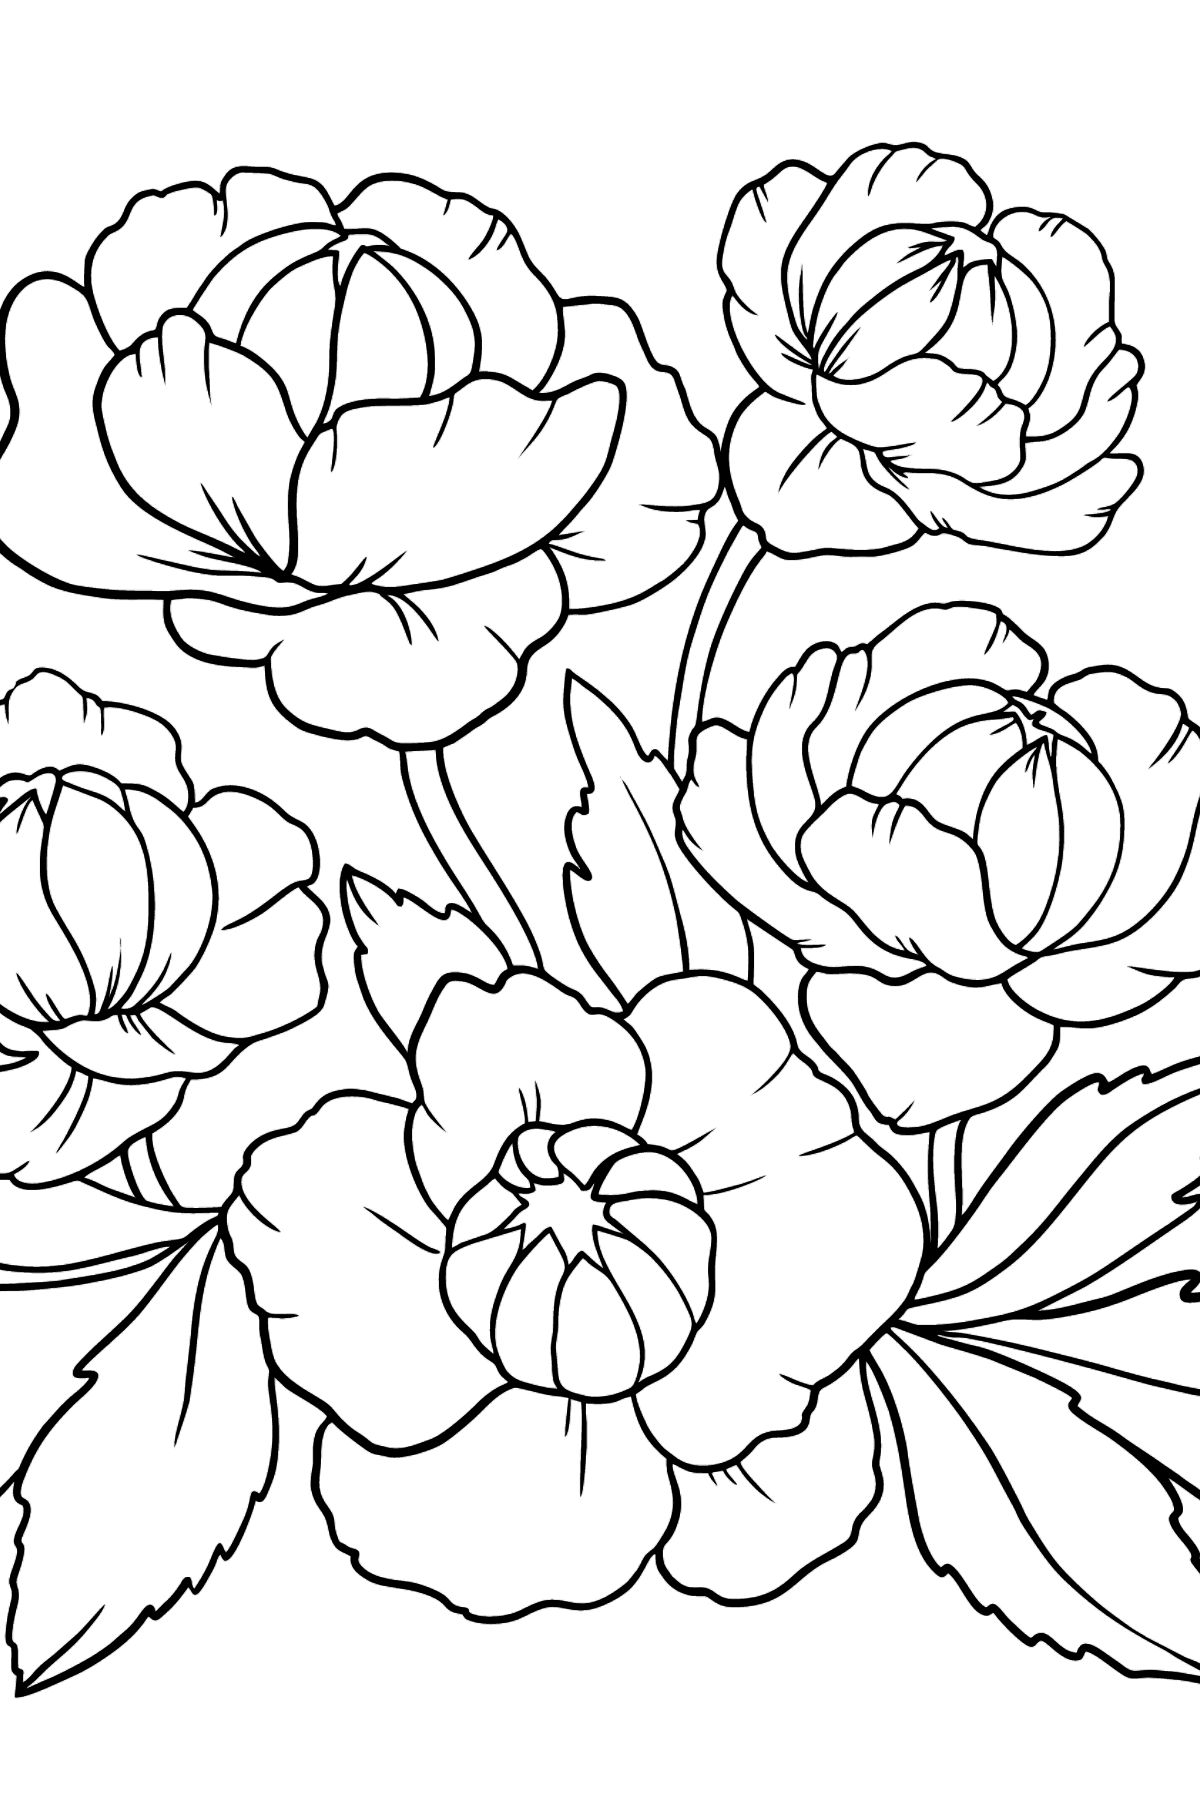 Desenho de flor de Rosa para colorir - Imagens para Colorir para Crianças